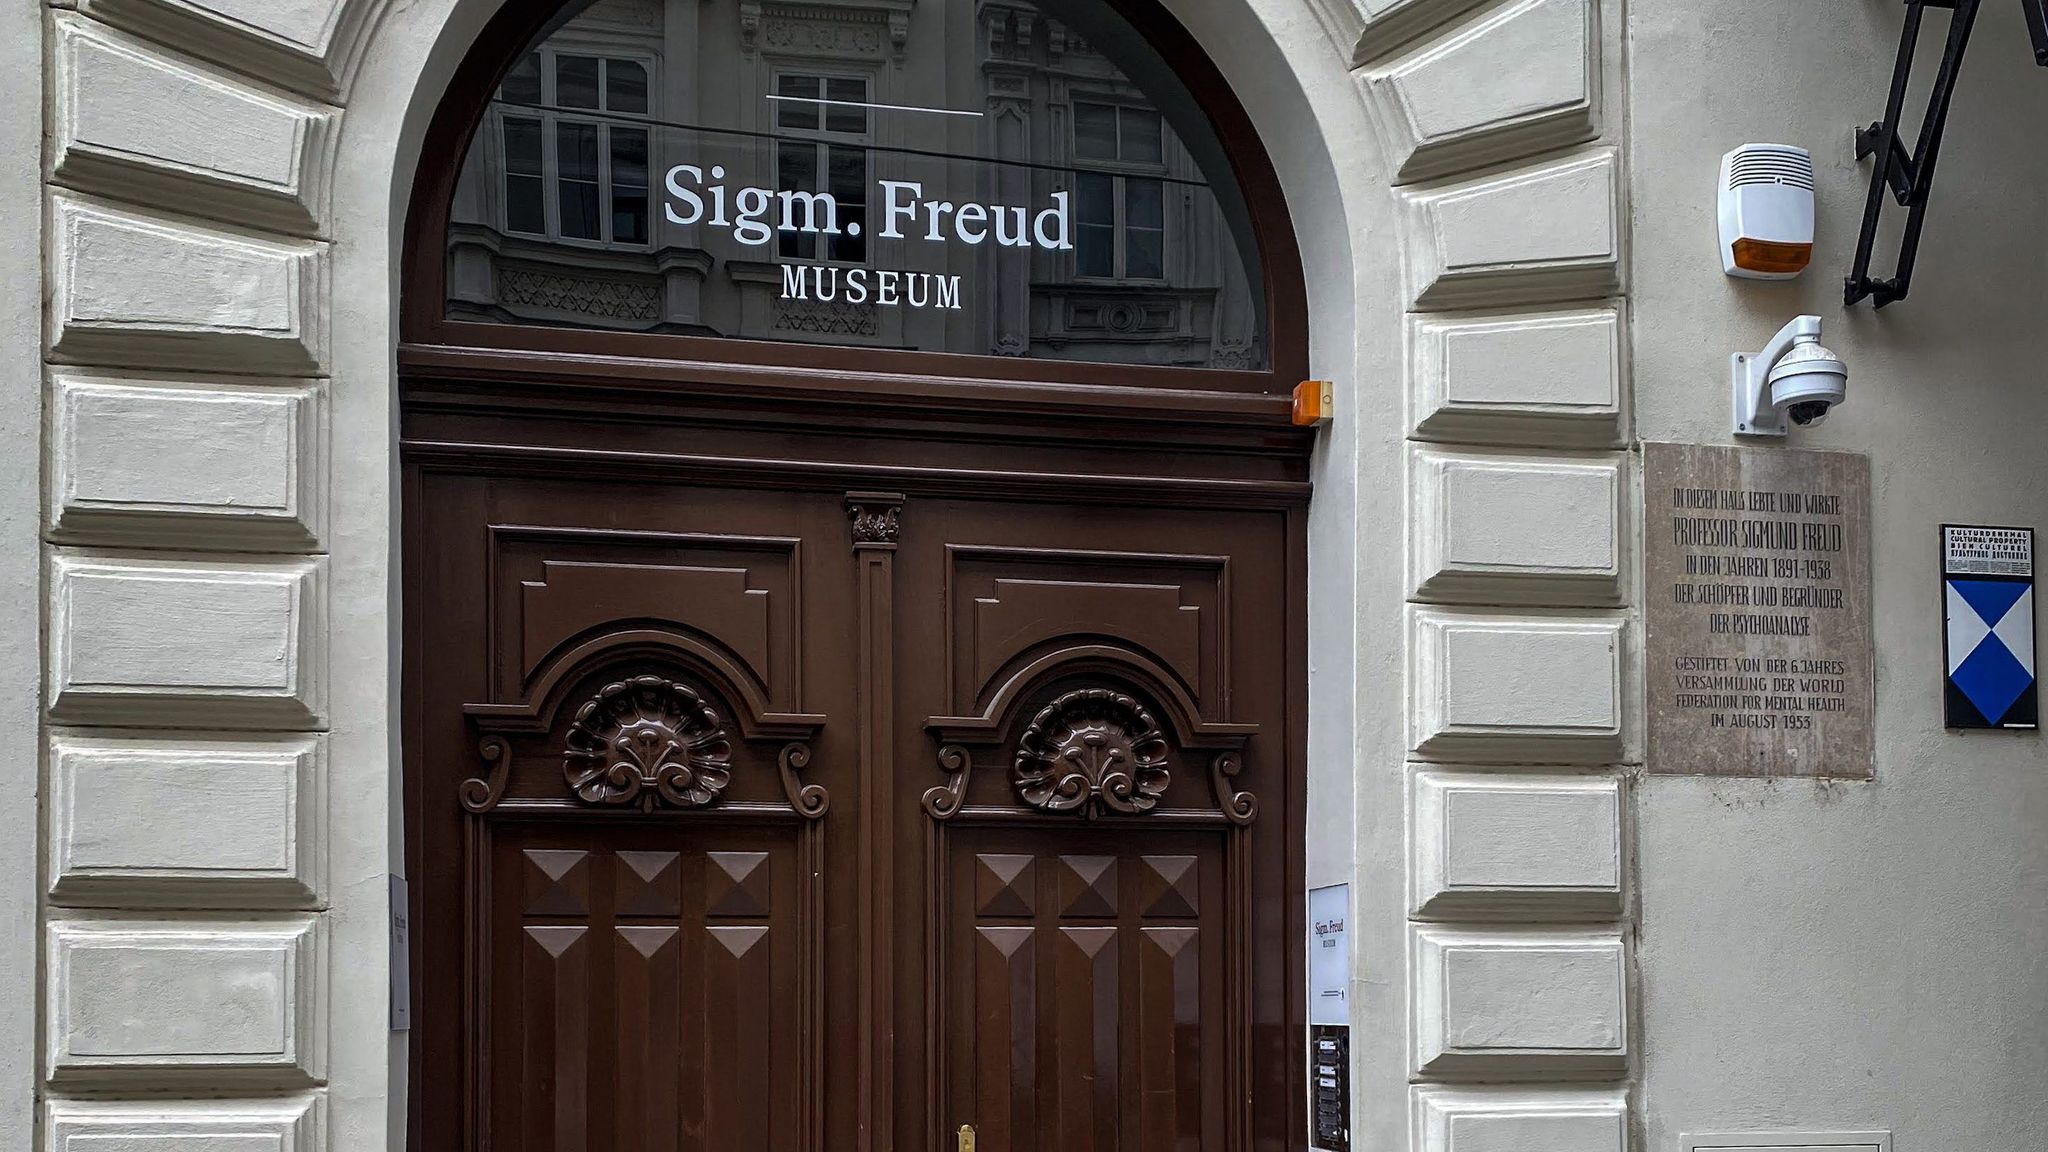 Sigmund Freud's House in Vienna